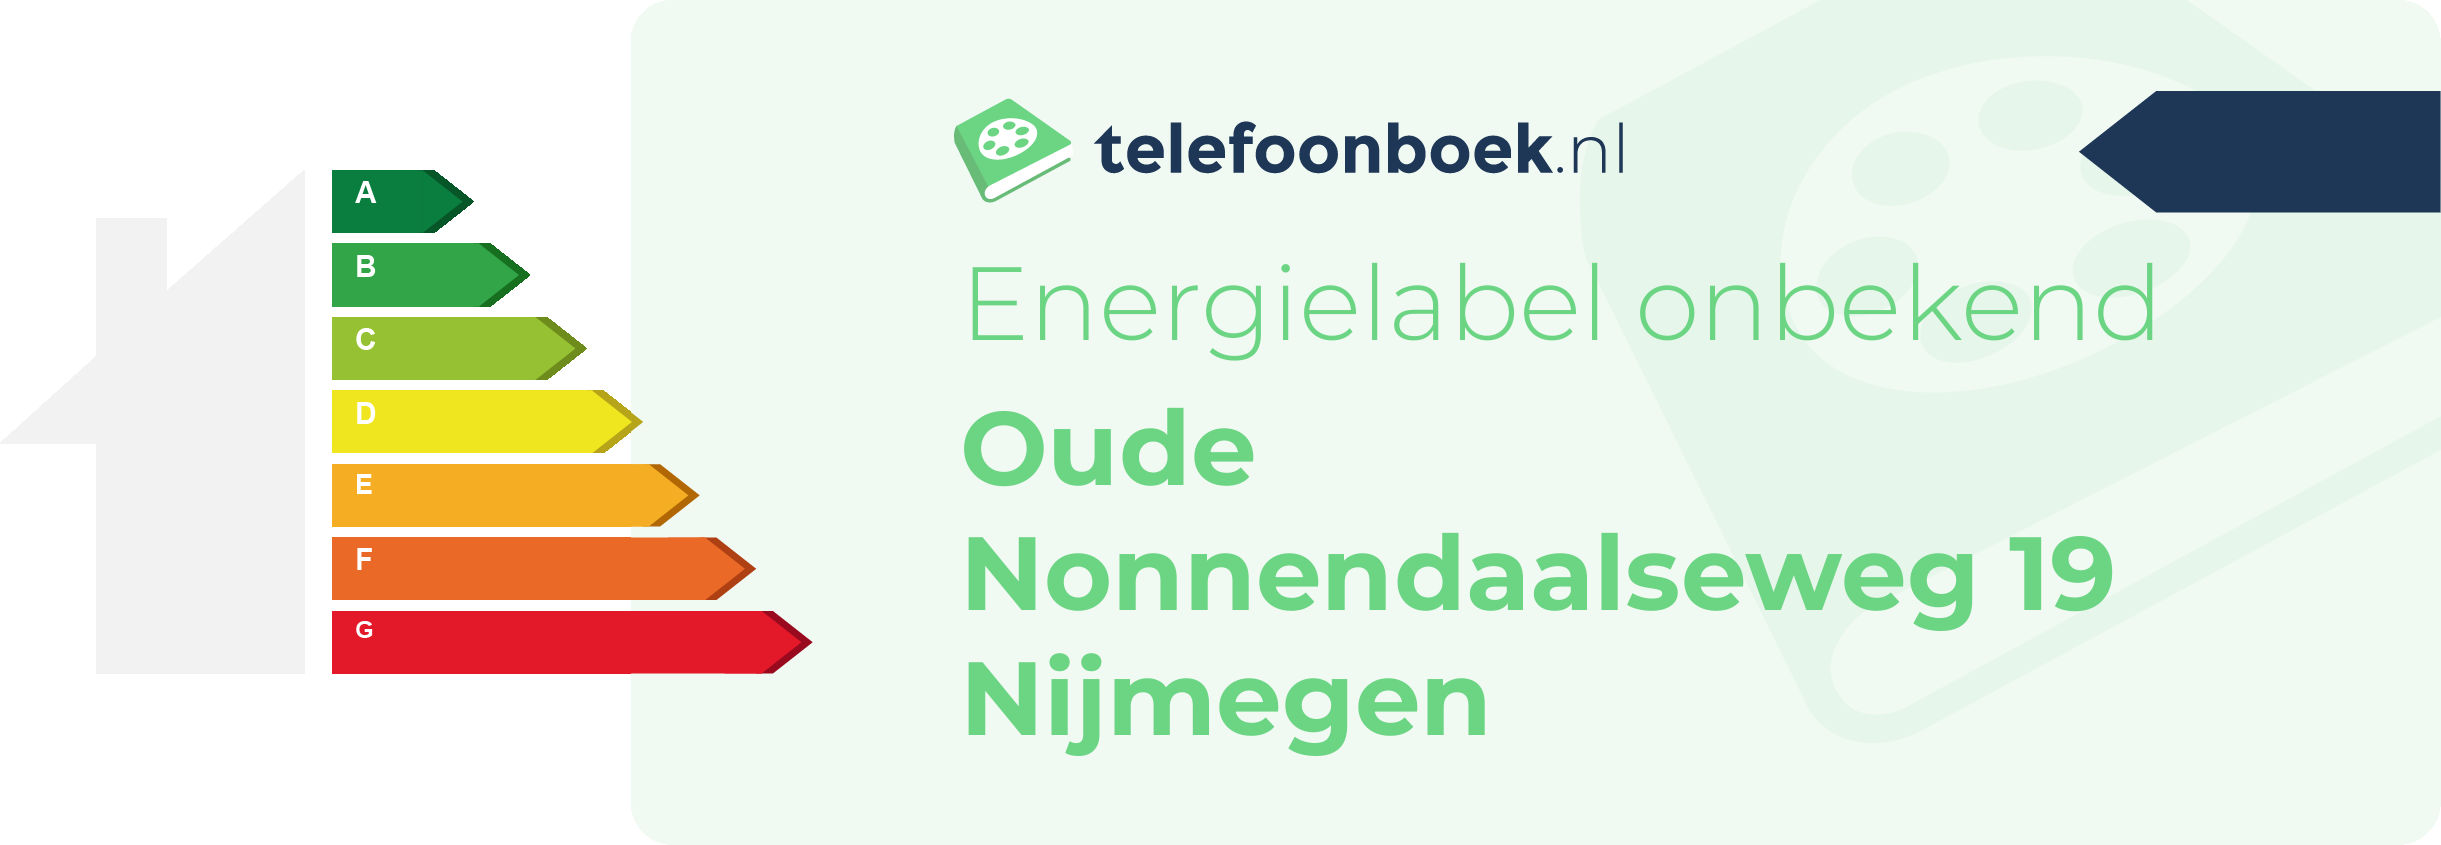 Energielabel Oude Nonnendaalseweg 19 Nijmegen